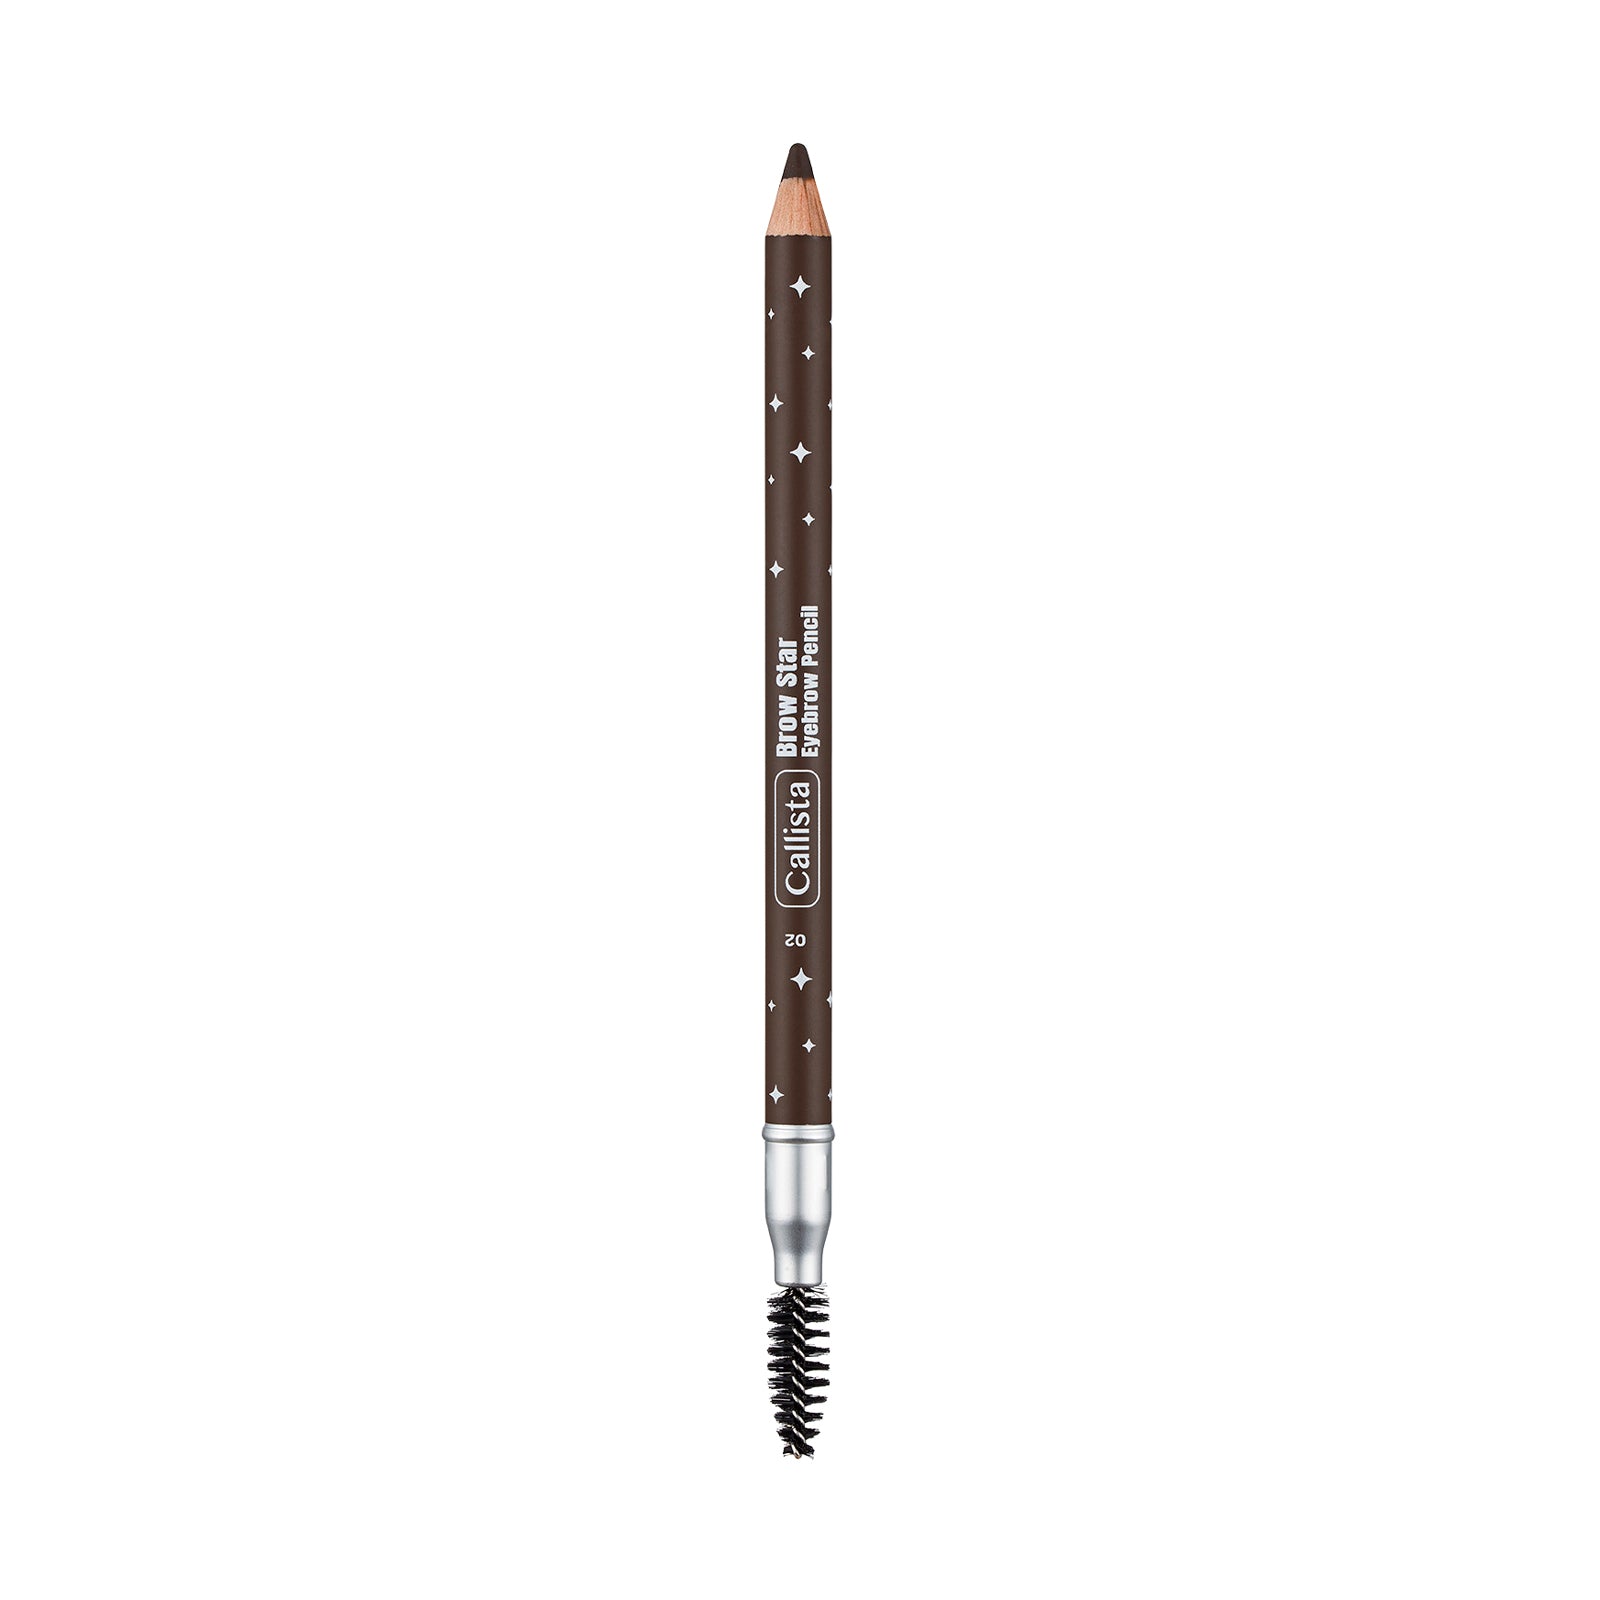 Callista Eyebrow Pencil 1.08g 02